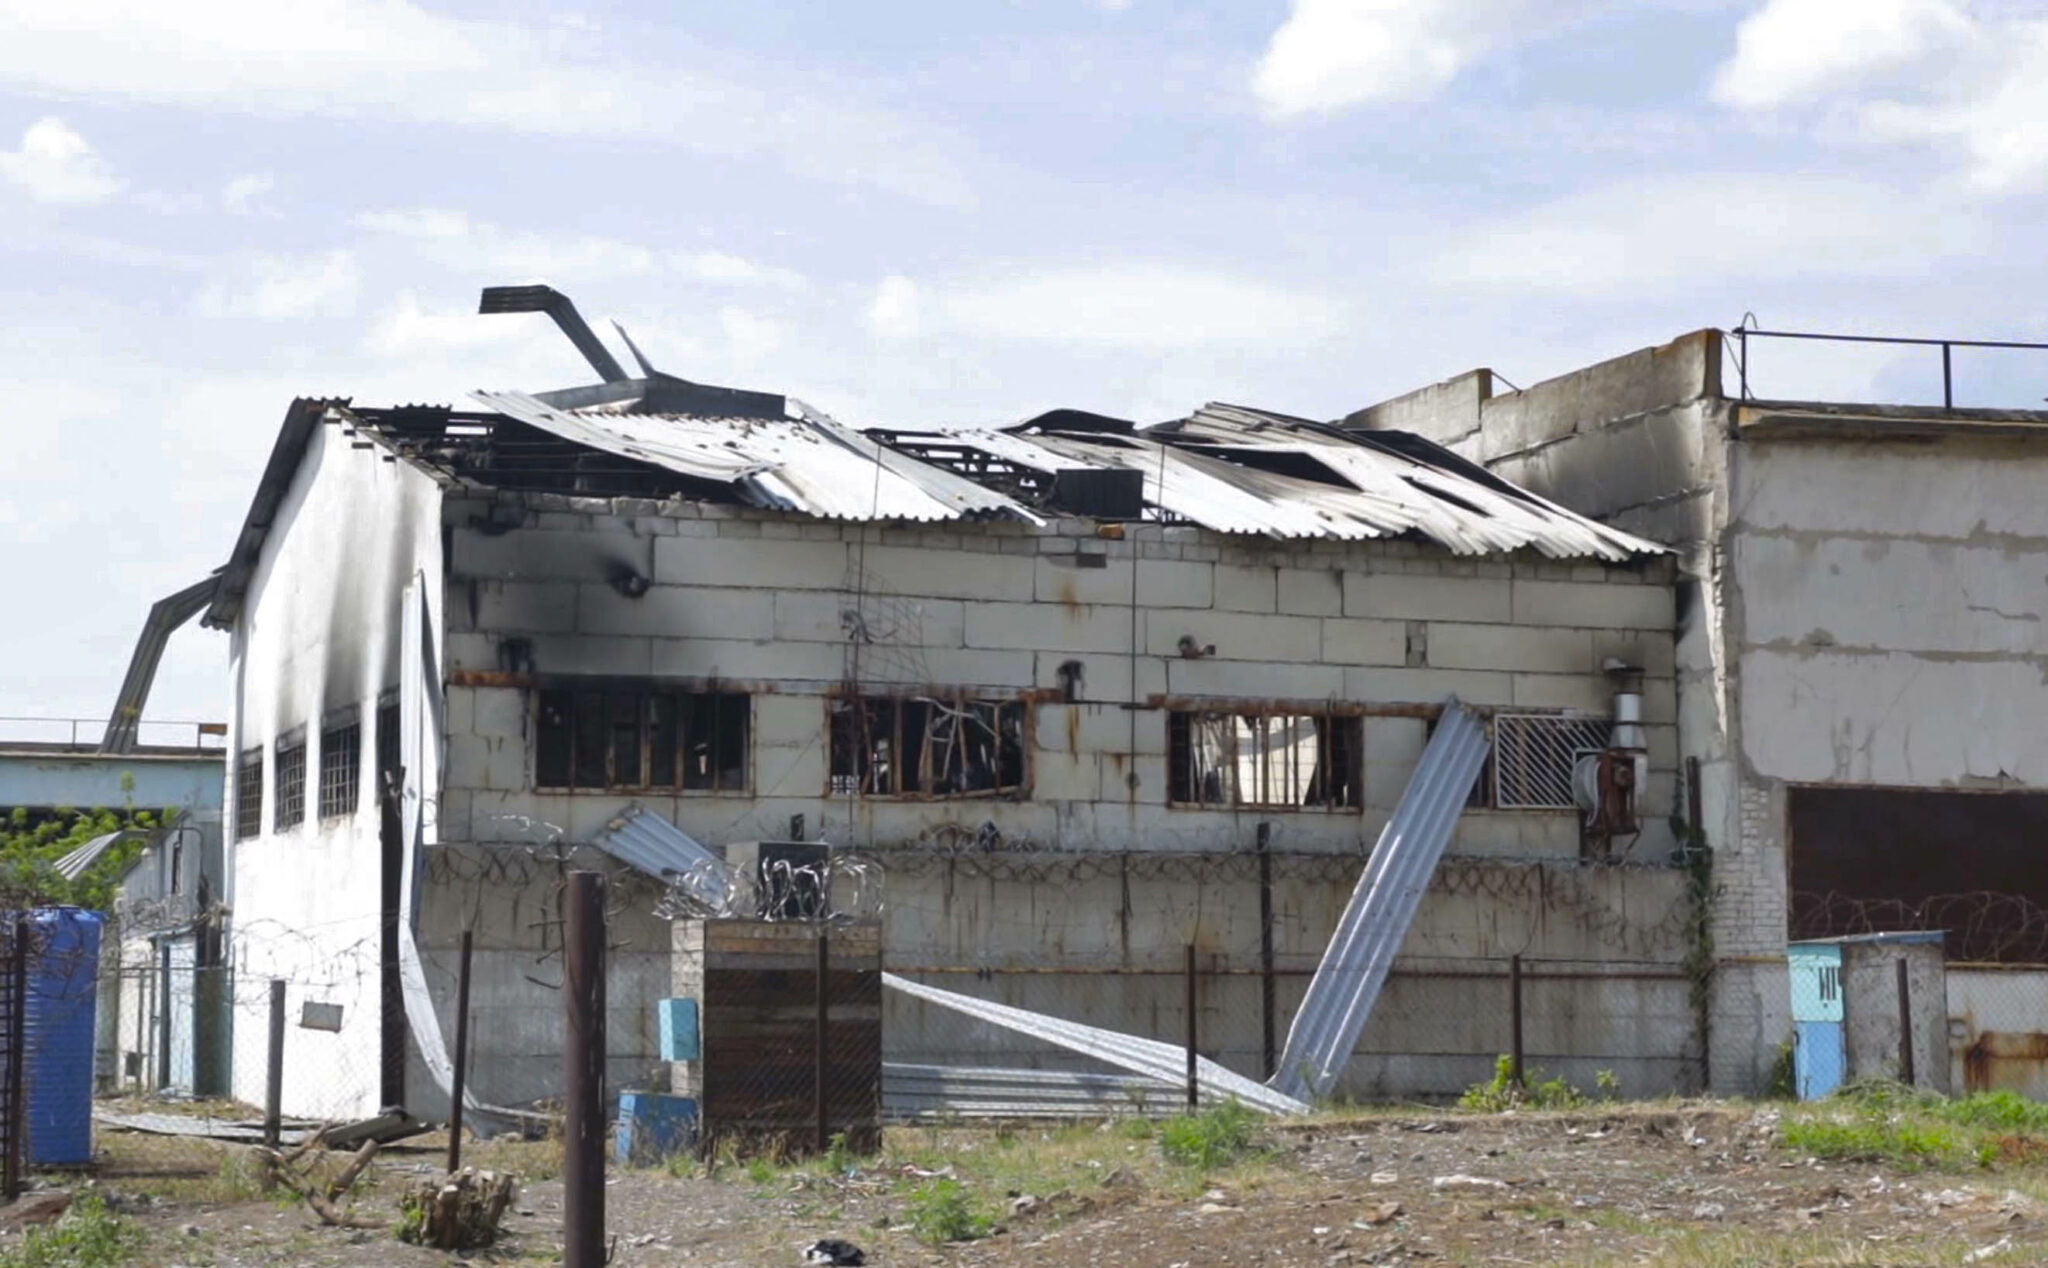 Барак на территории колонии в Еленовке, разрушенный в результате взрыва. Фото AP/Scanpix/LETA